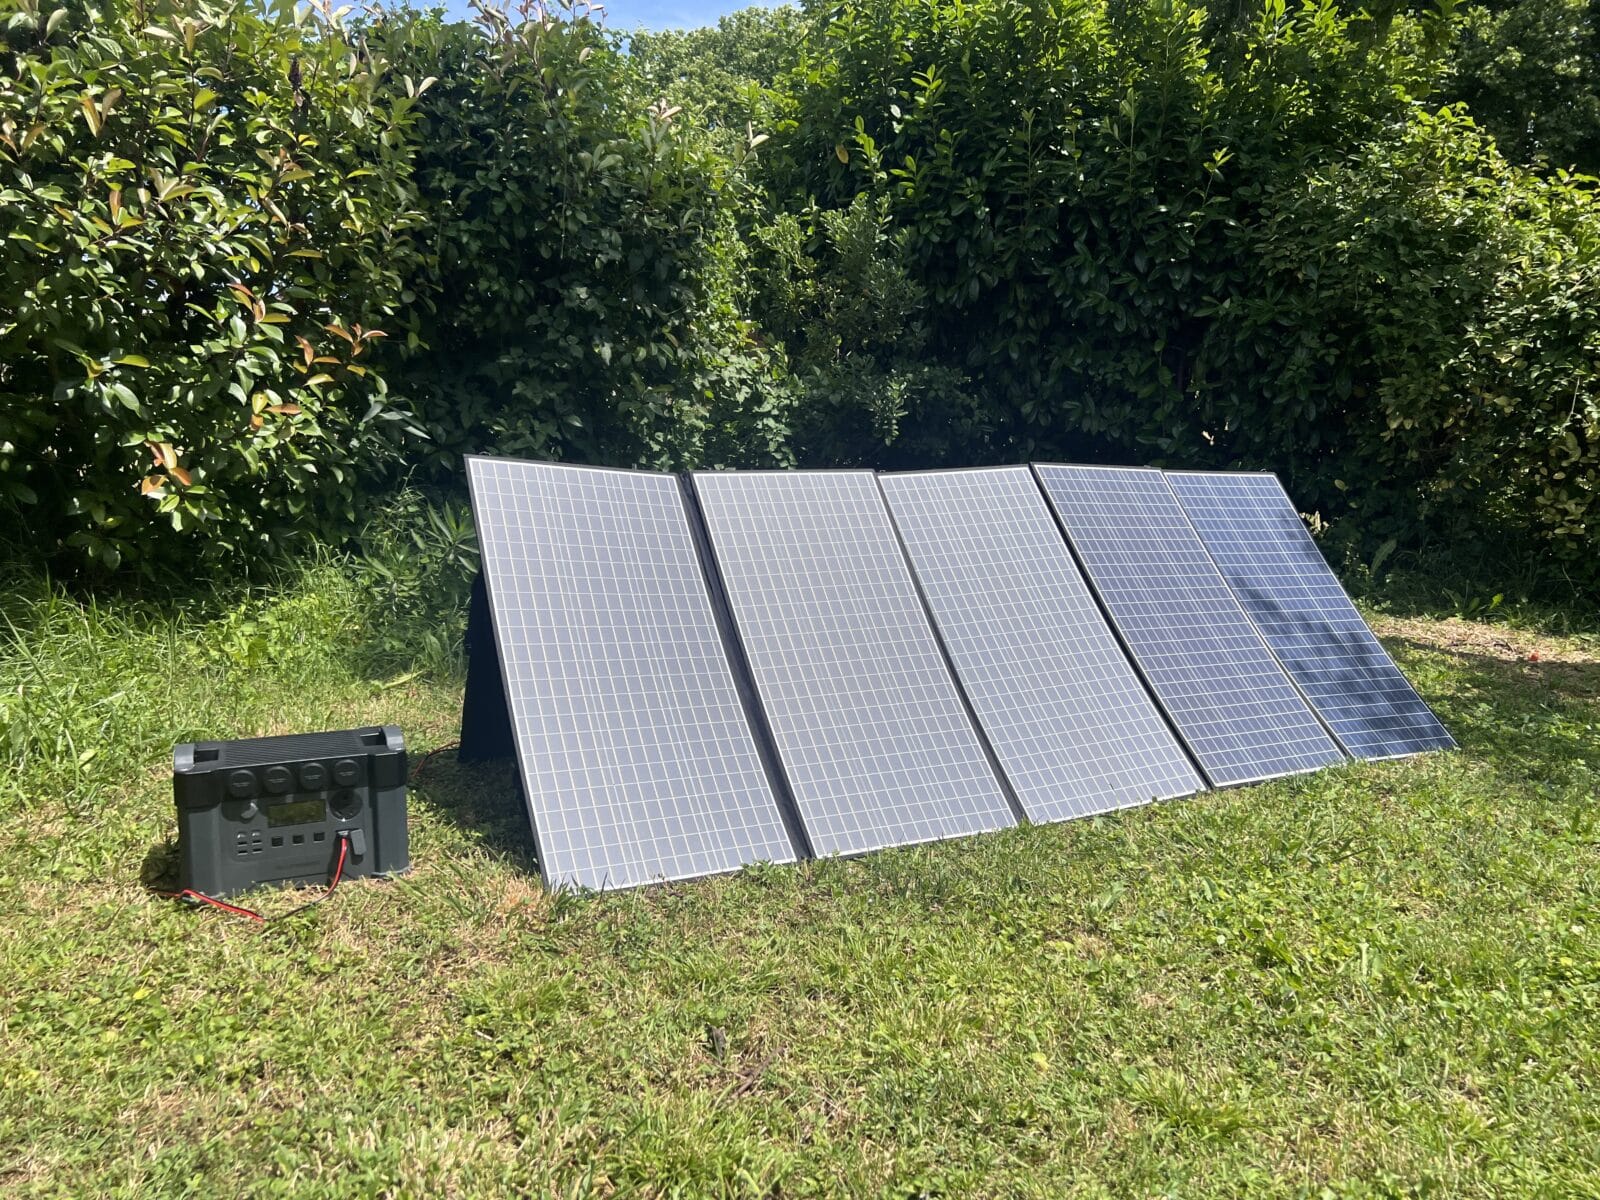 Batterie ALLPOWERS S2000 Pro et panneau solaire installés côte à côte dans un champ verdoyant